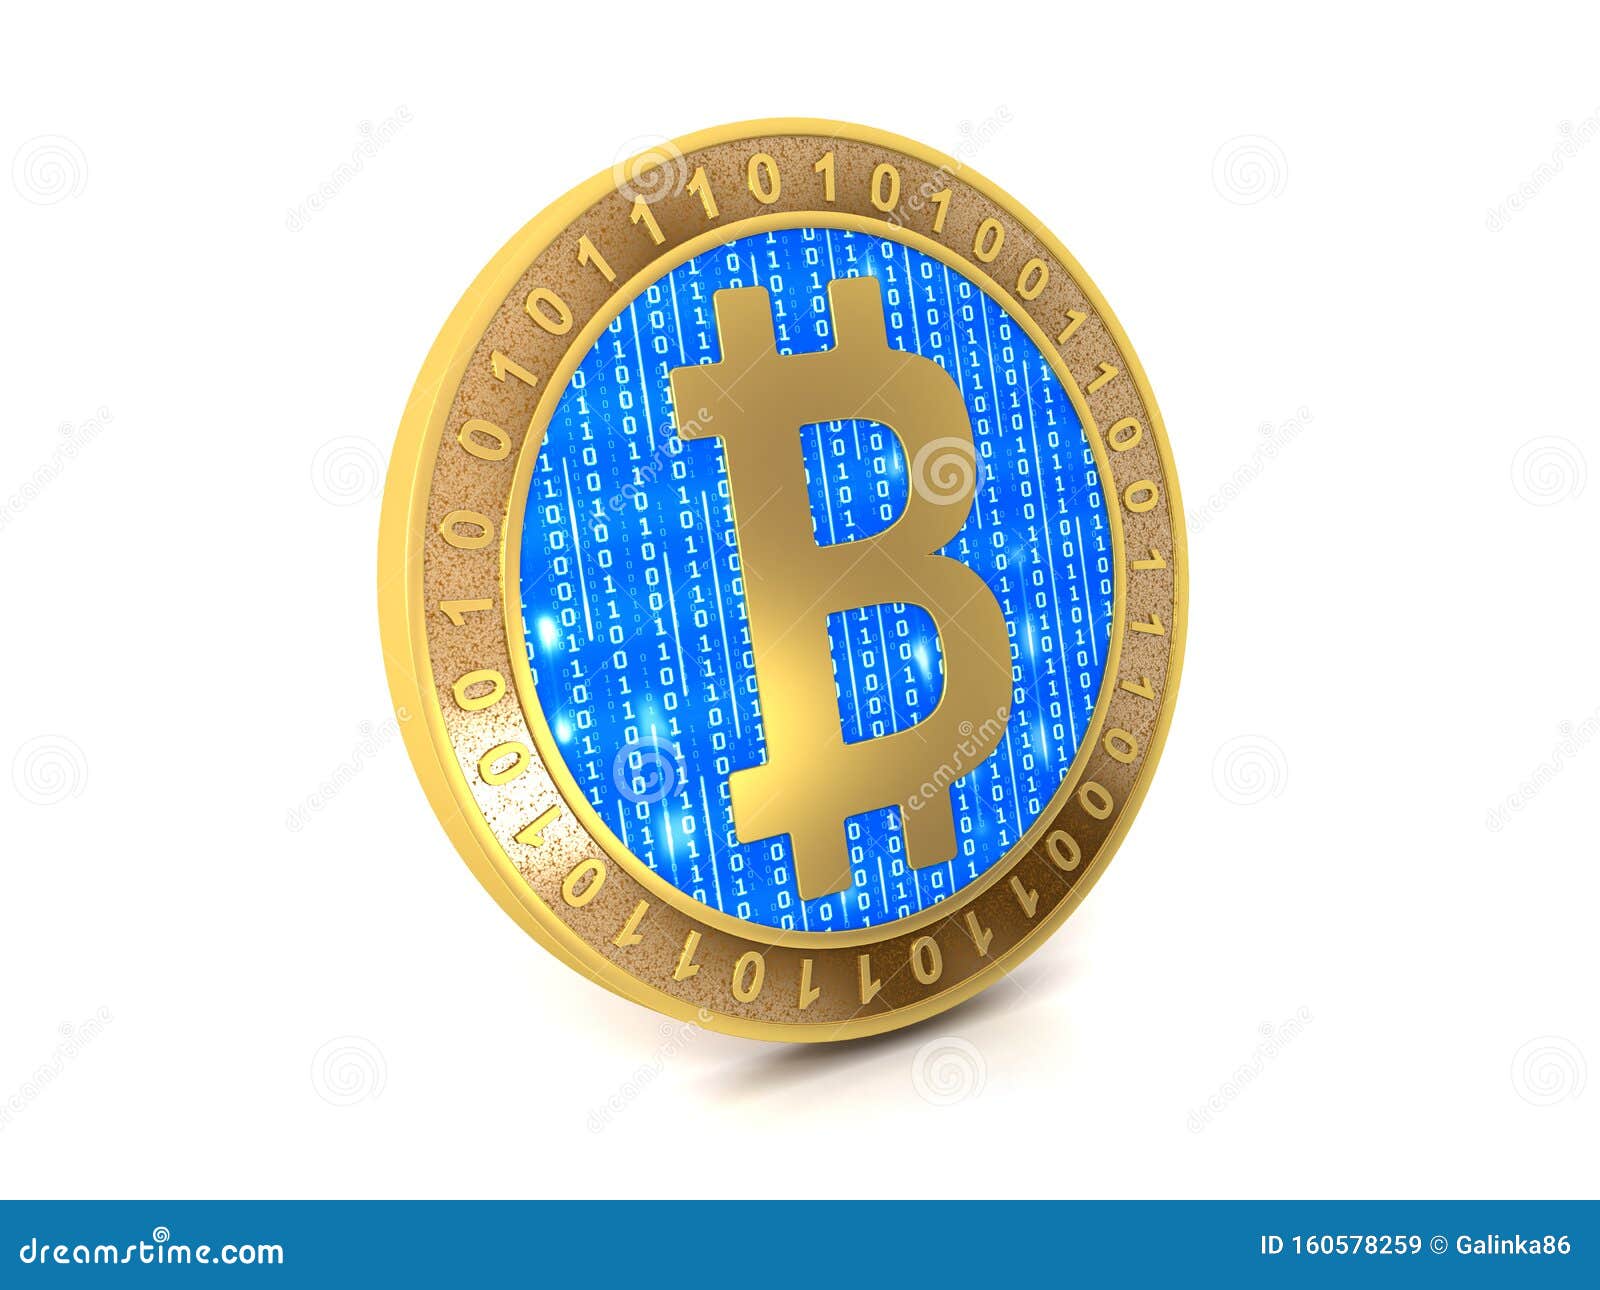 bitcoin white coin